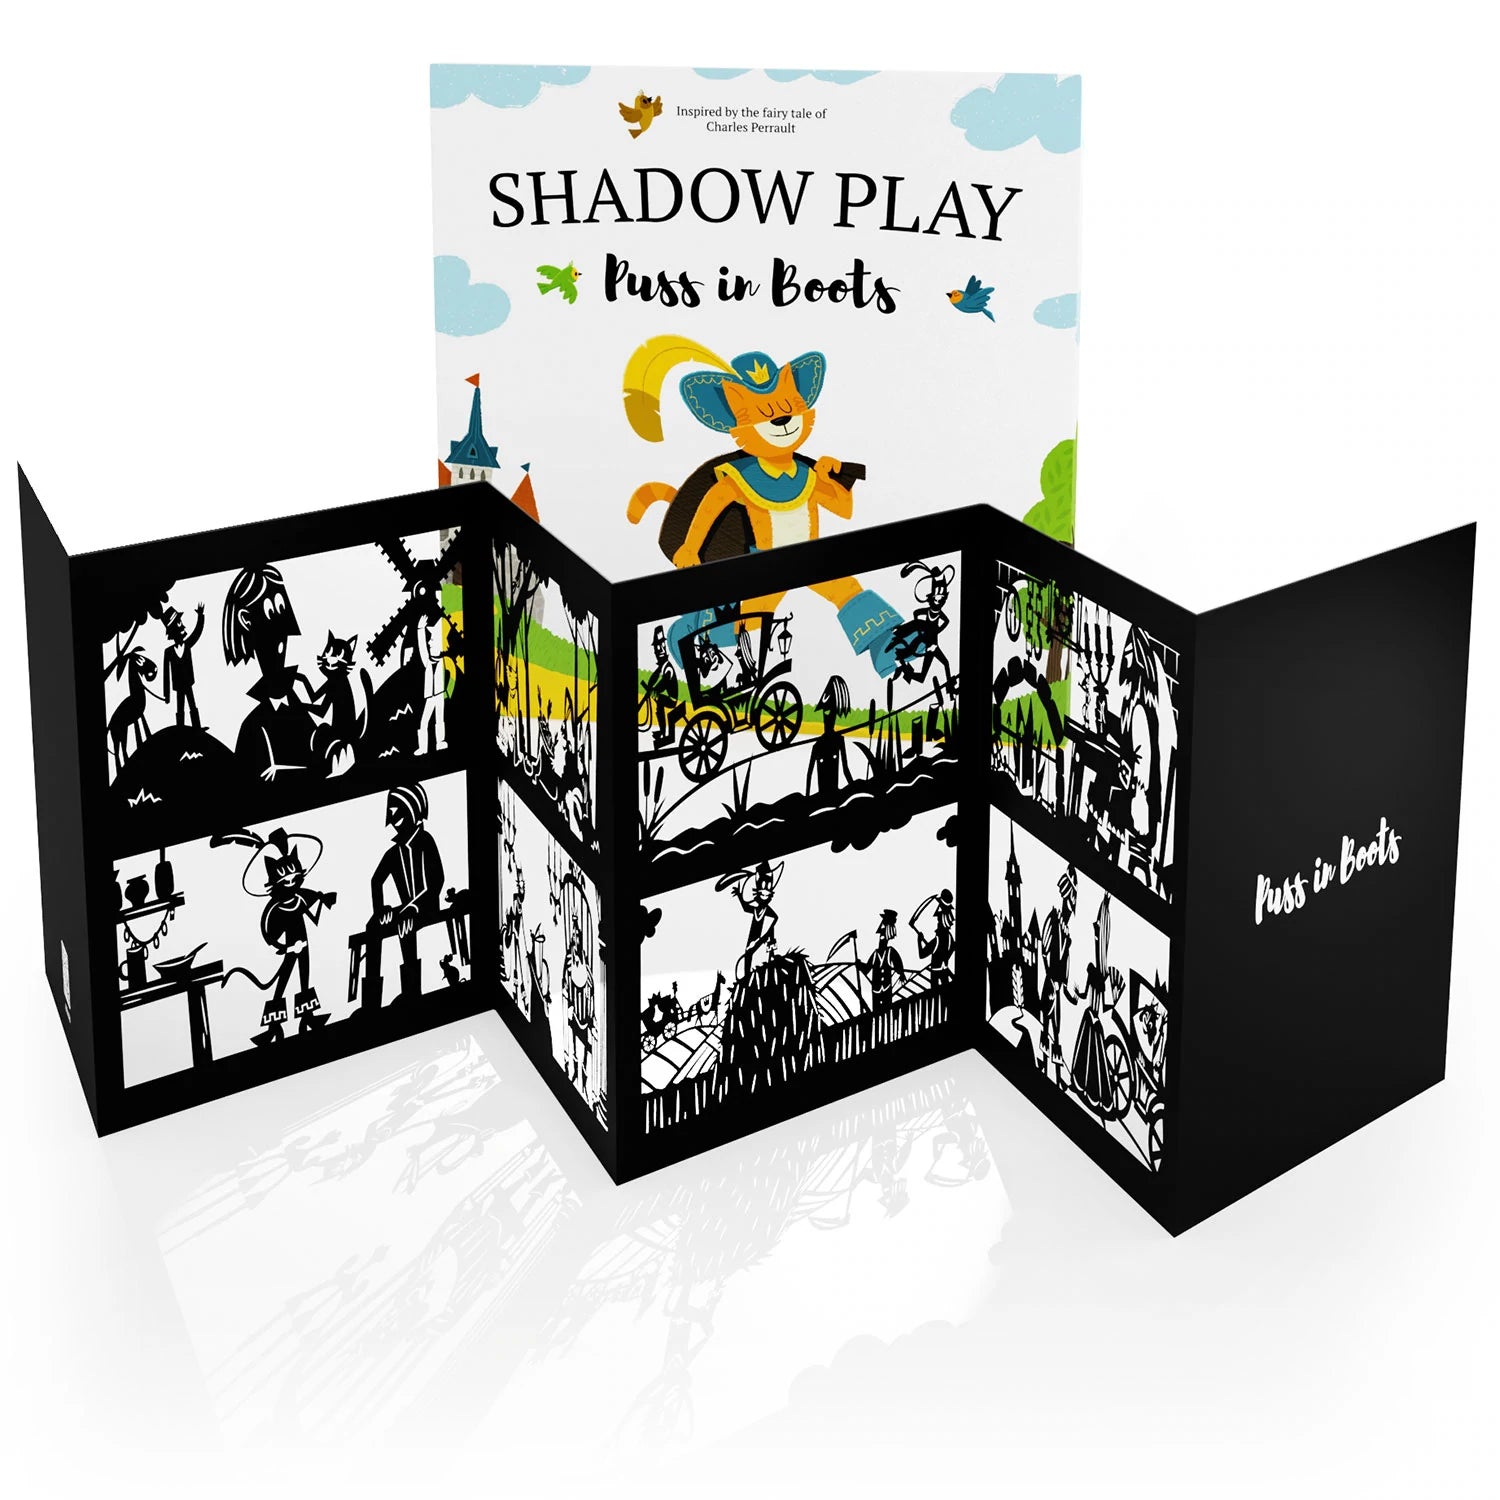 The Snow Queen   Shadow Book (Activity Book)